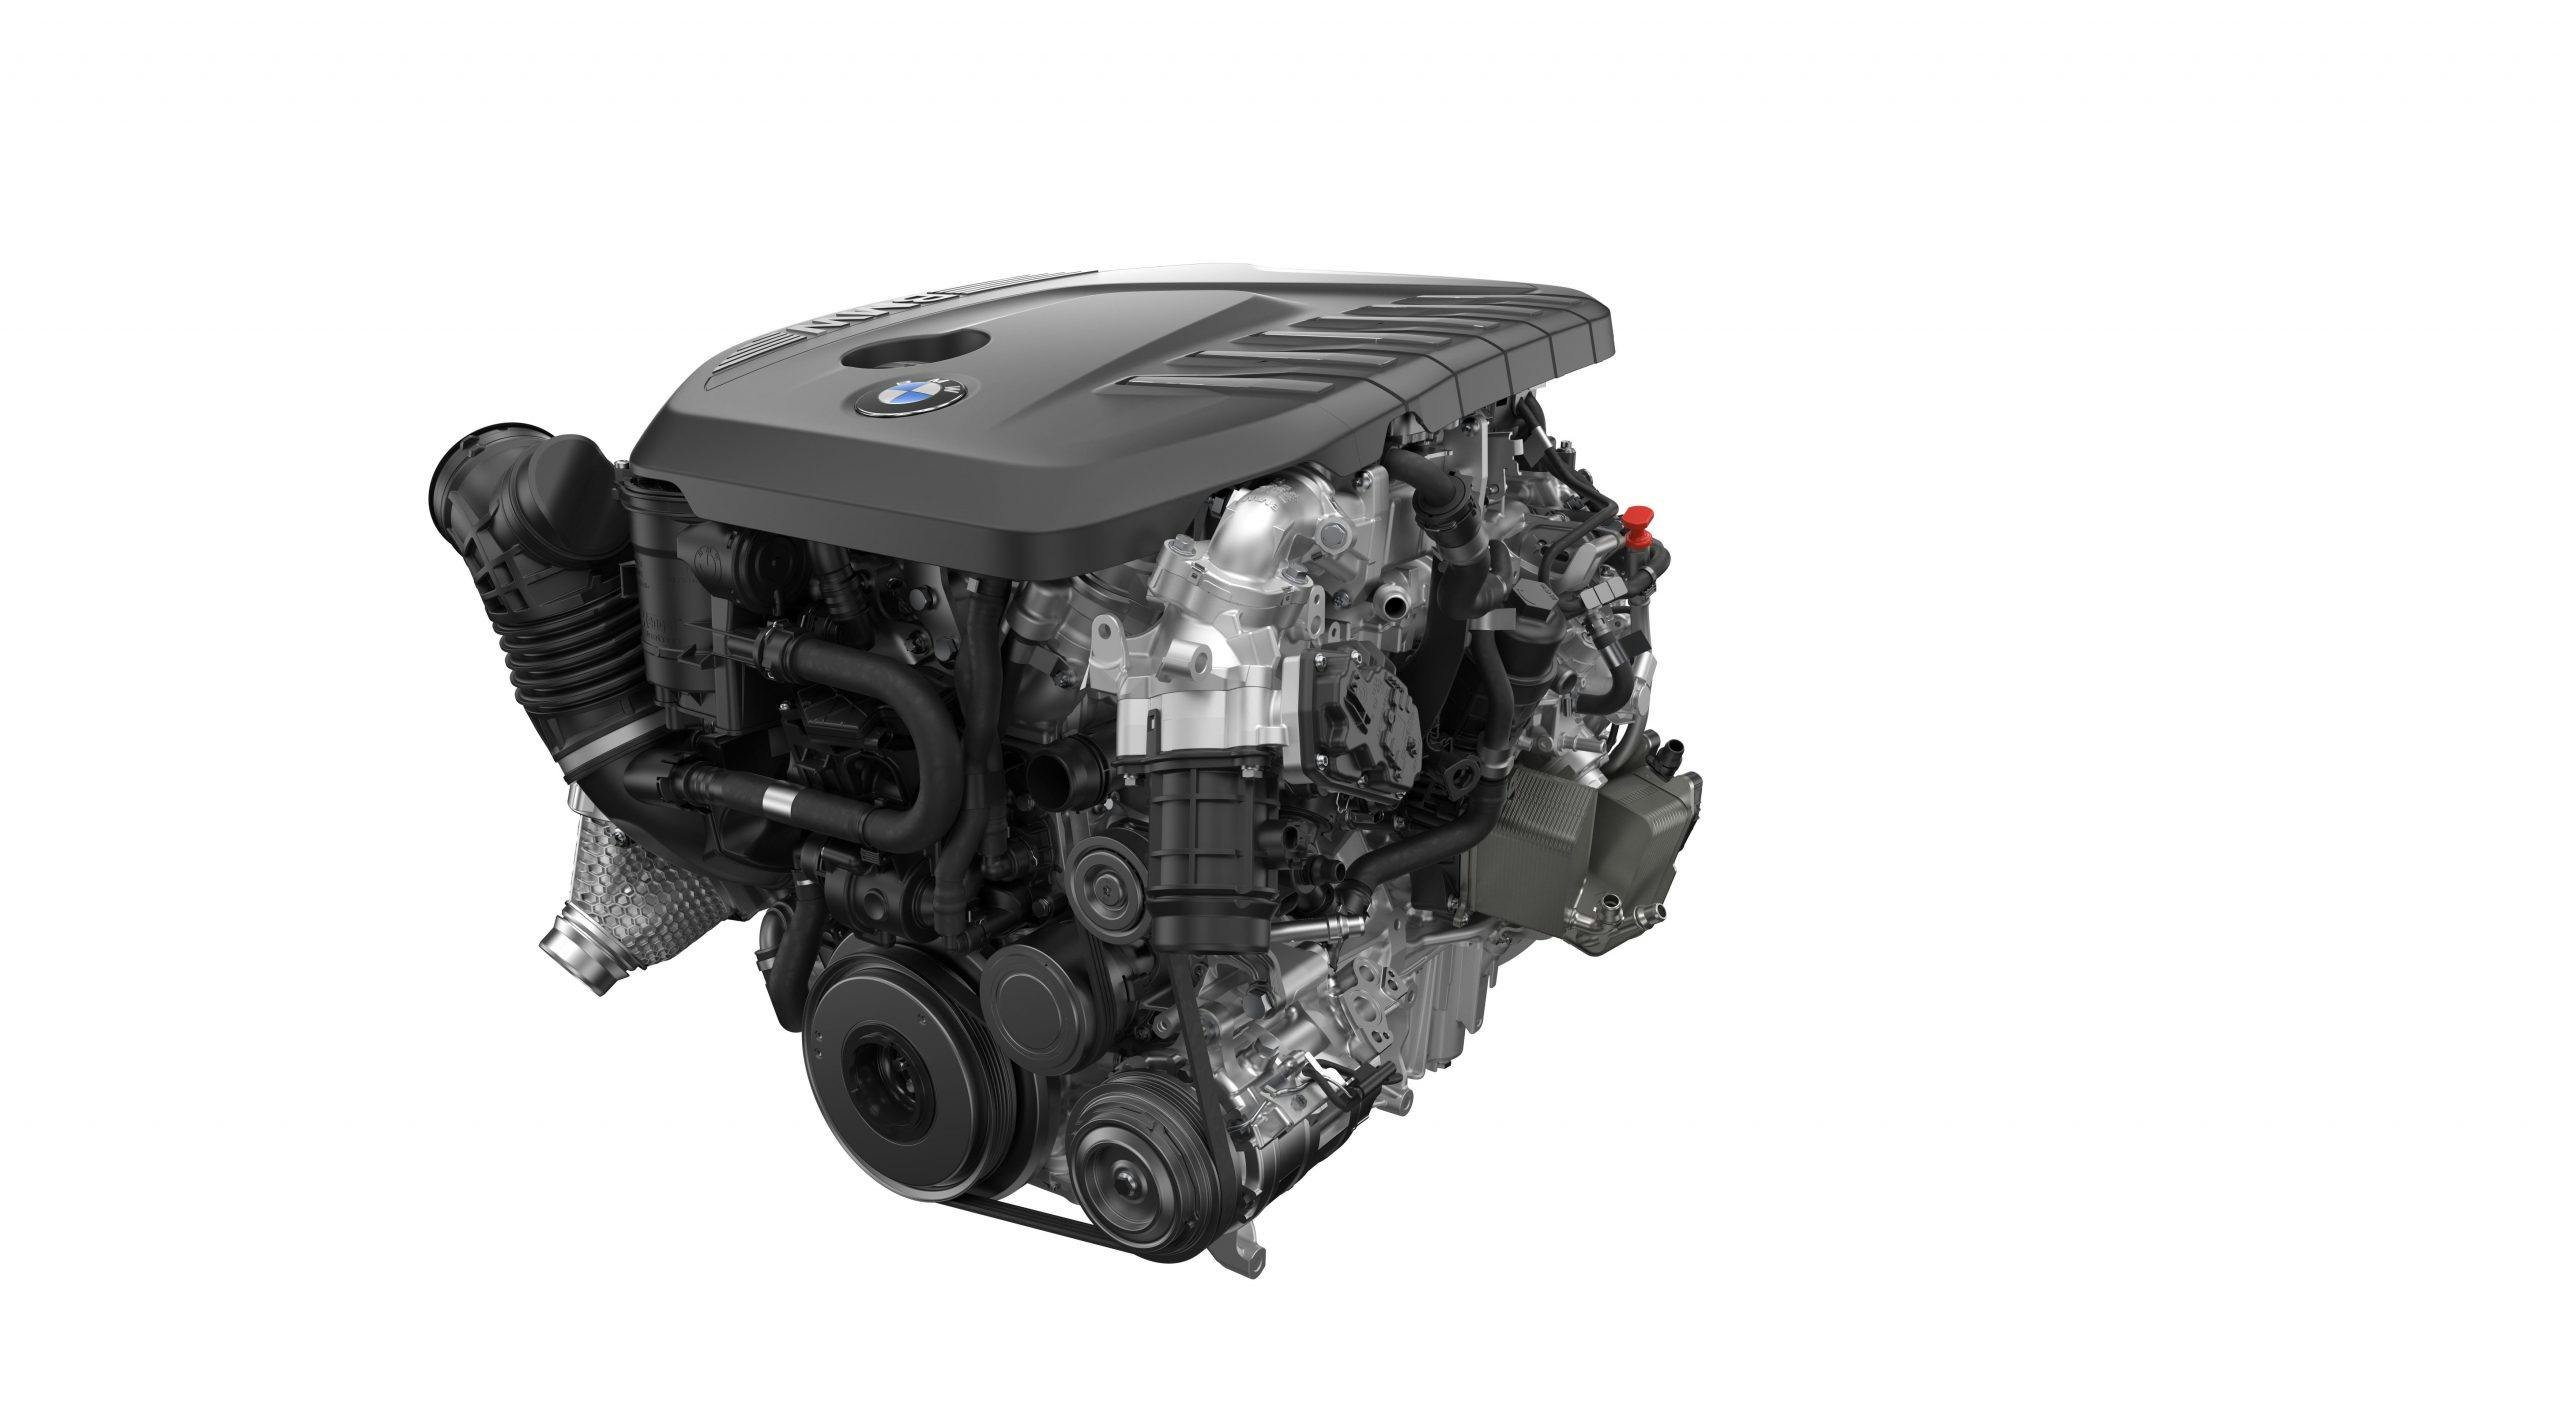 BMW 7-series six-cylinder diesel engine